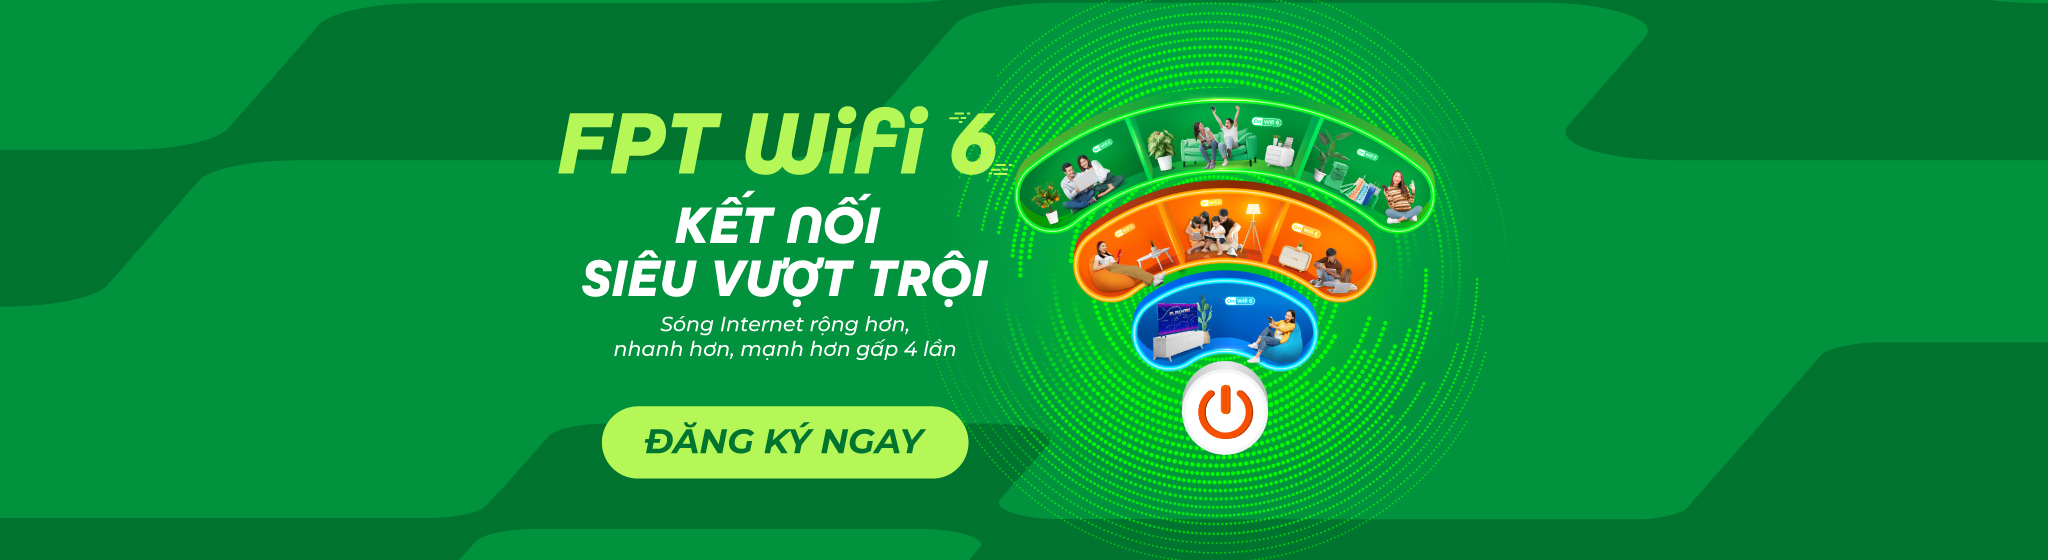 wifi 6 green